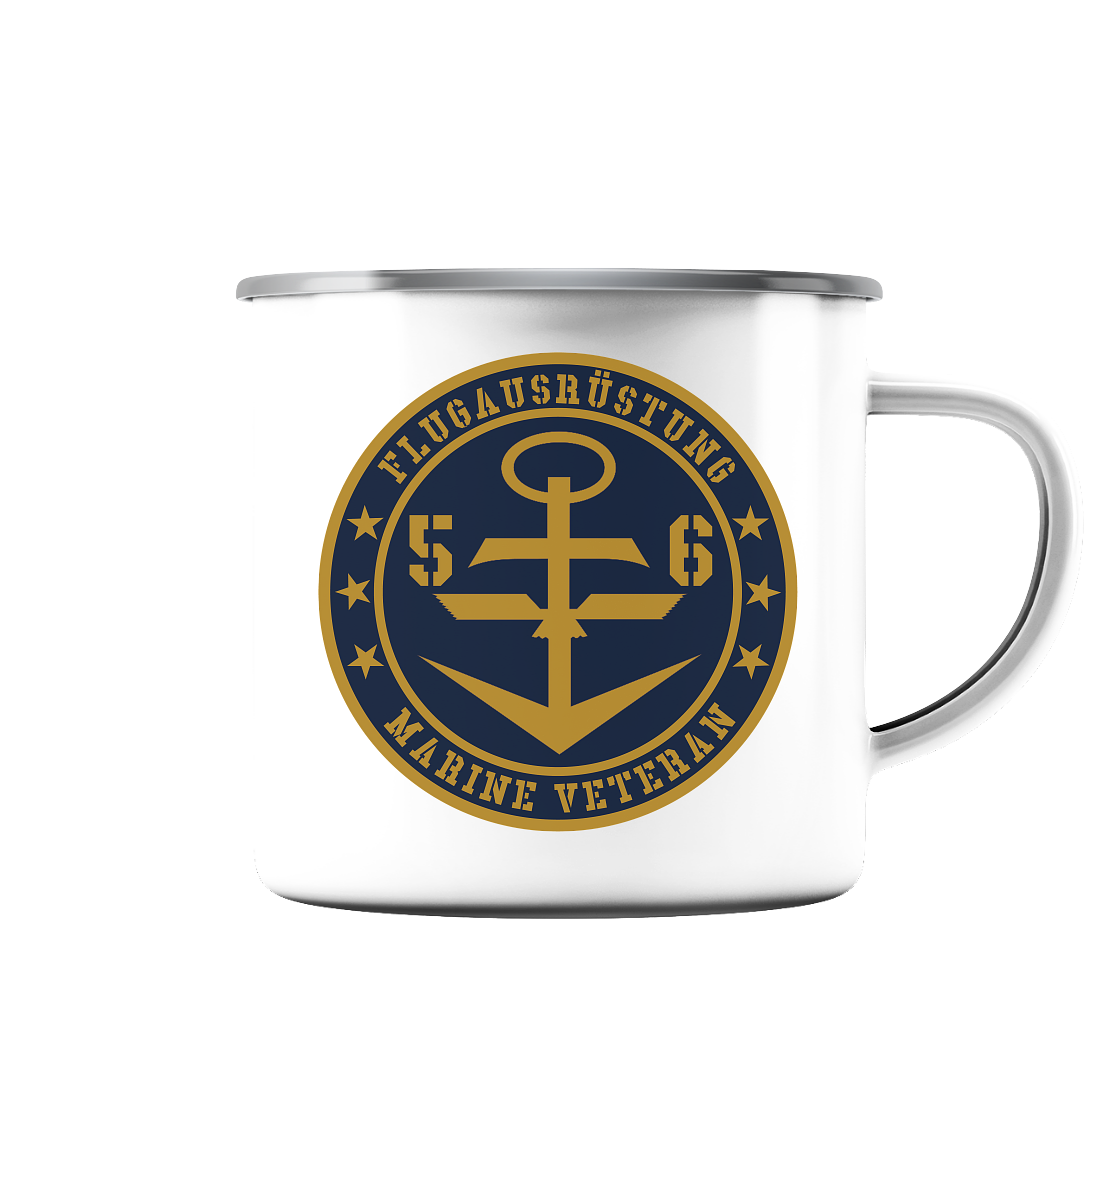 Marine Veteran 56er FLUGAUSRÜSTUNG - Emaille Tasse (Silber)